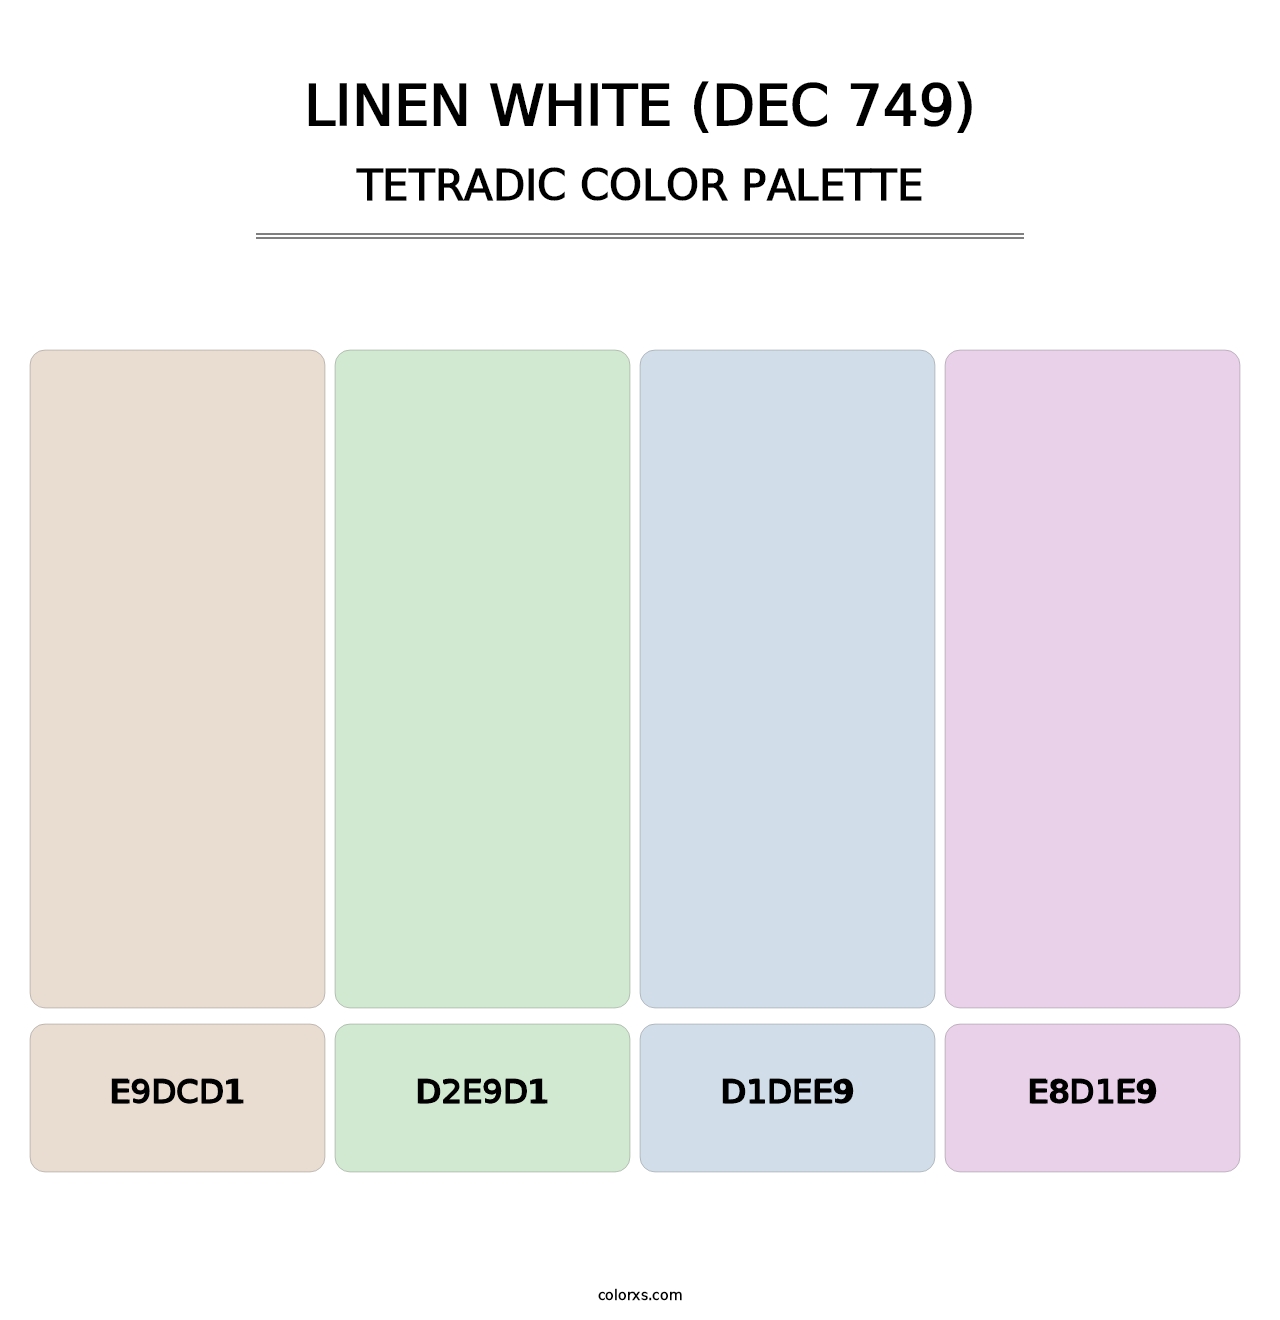 Linen White (DEC 749) - Tetradic Color Palette